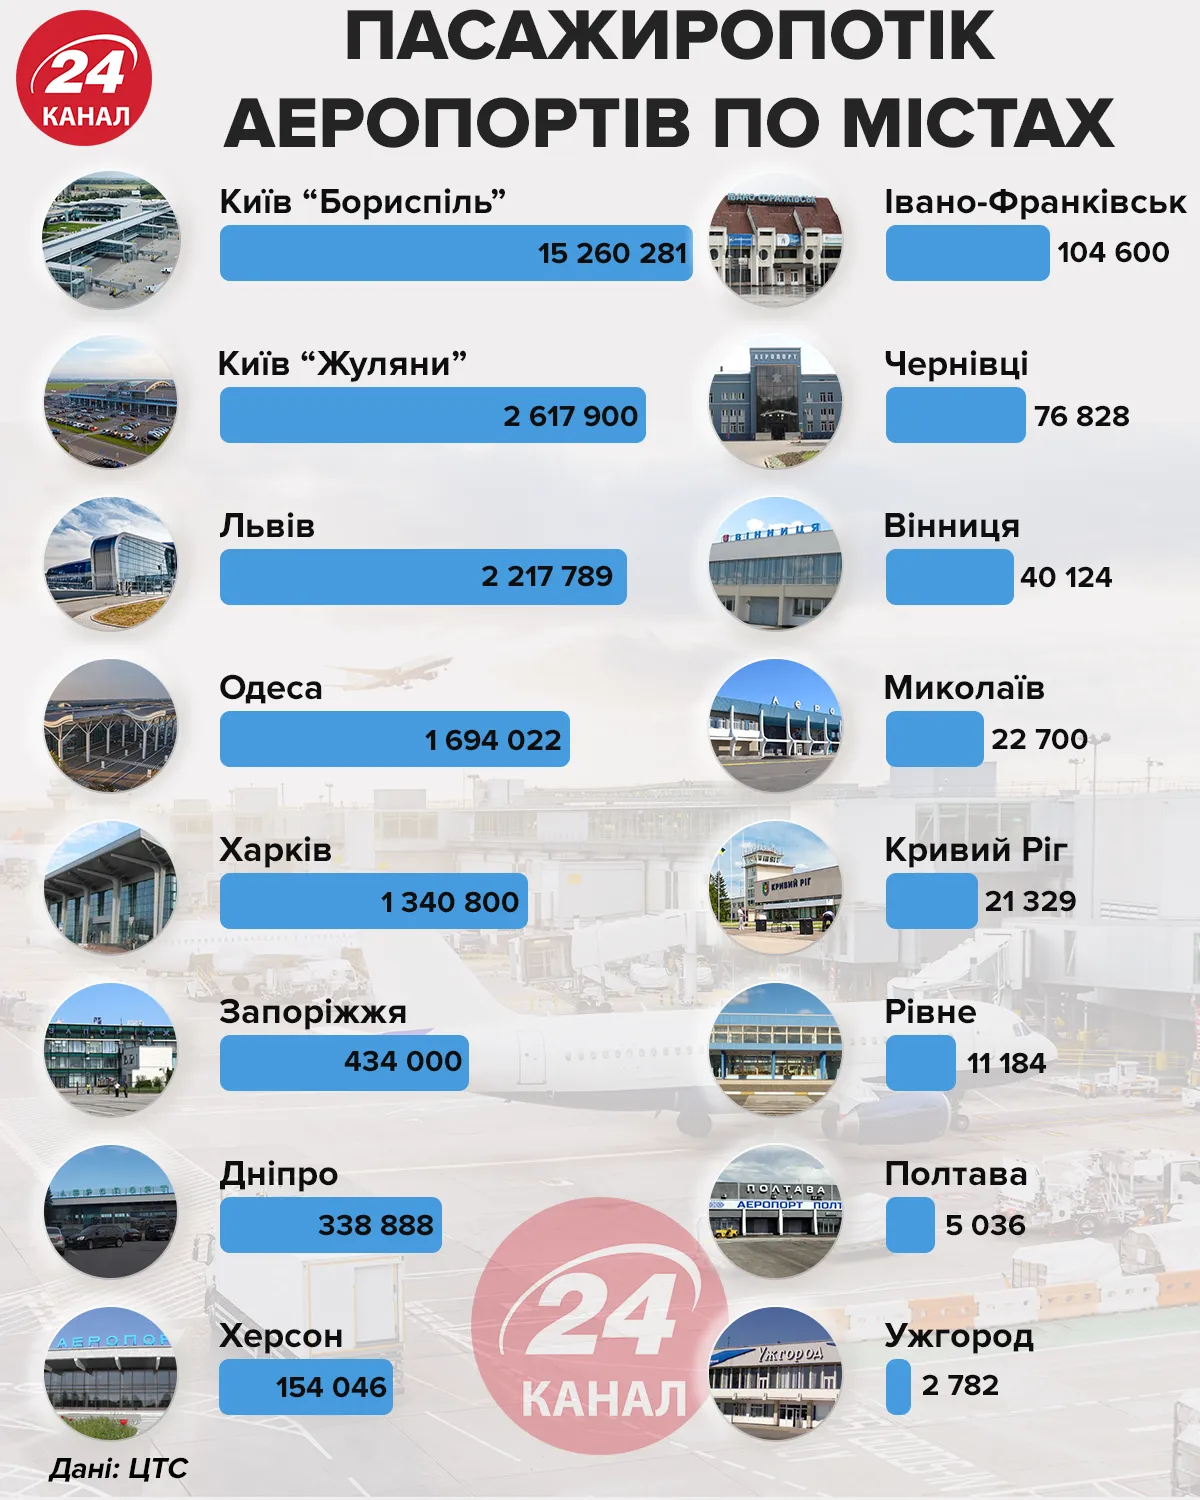 Пасажиропотік аеропортів по містах інфографіка 24 канал